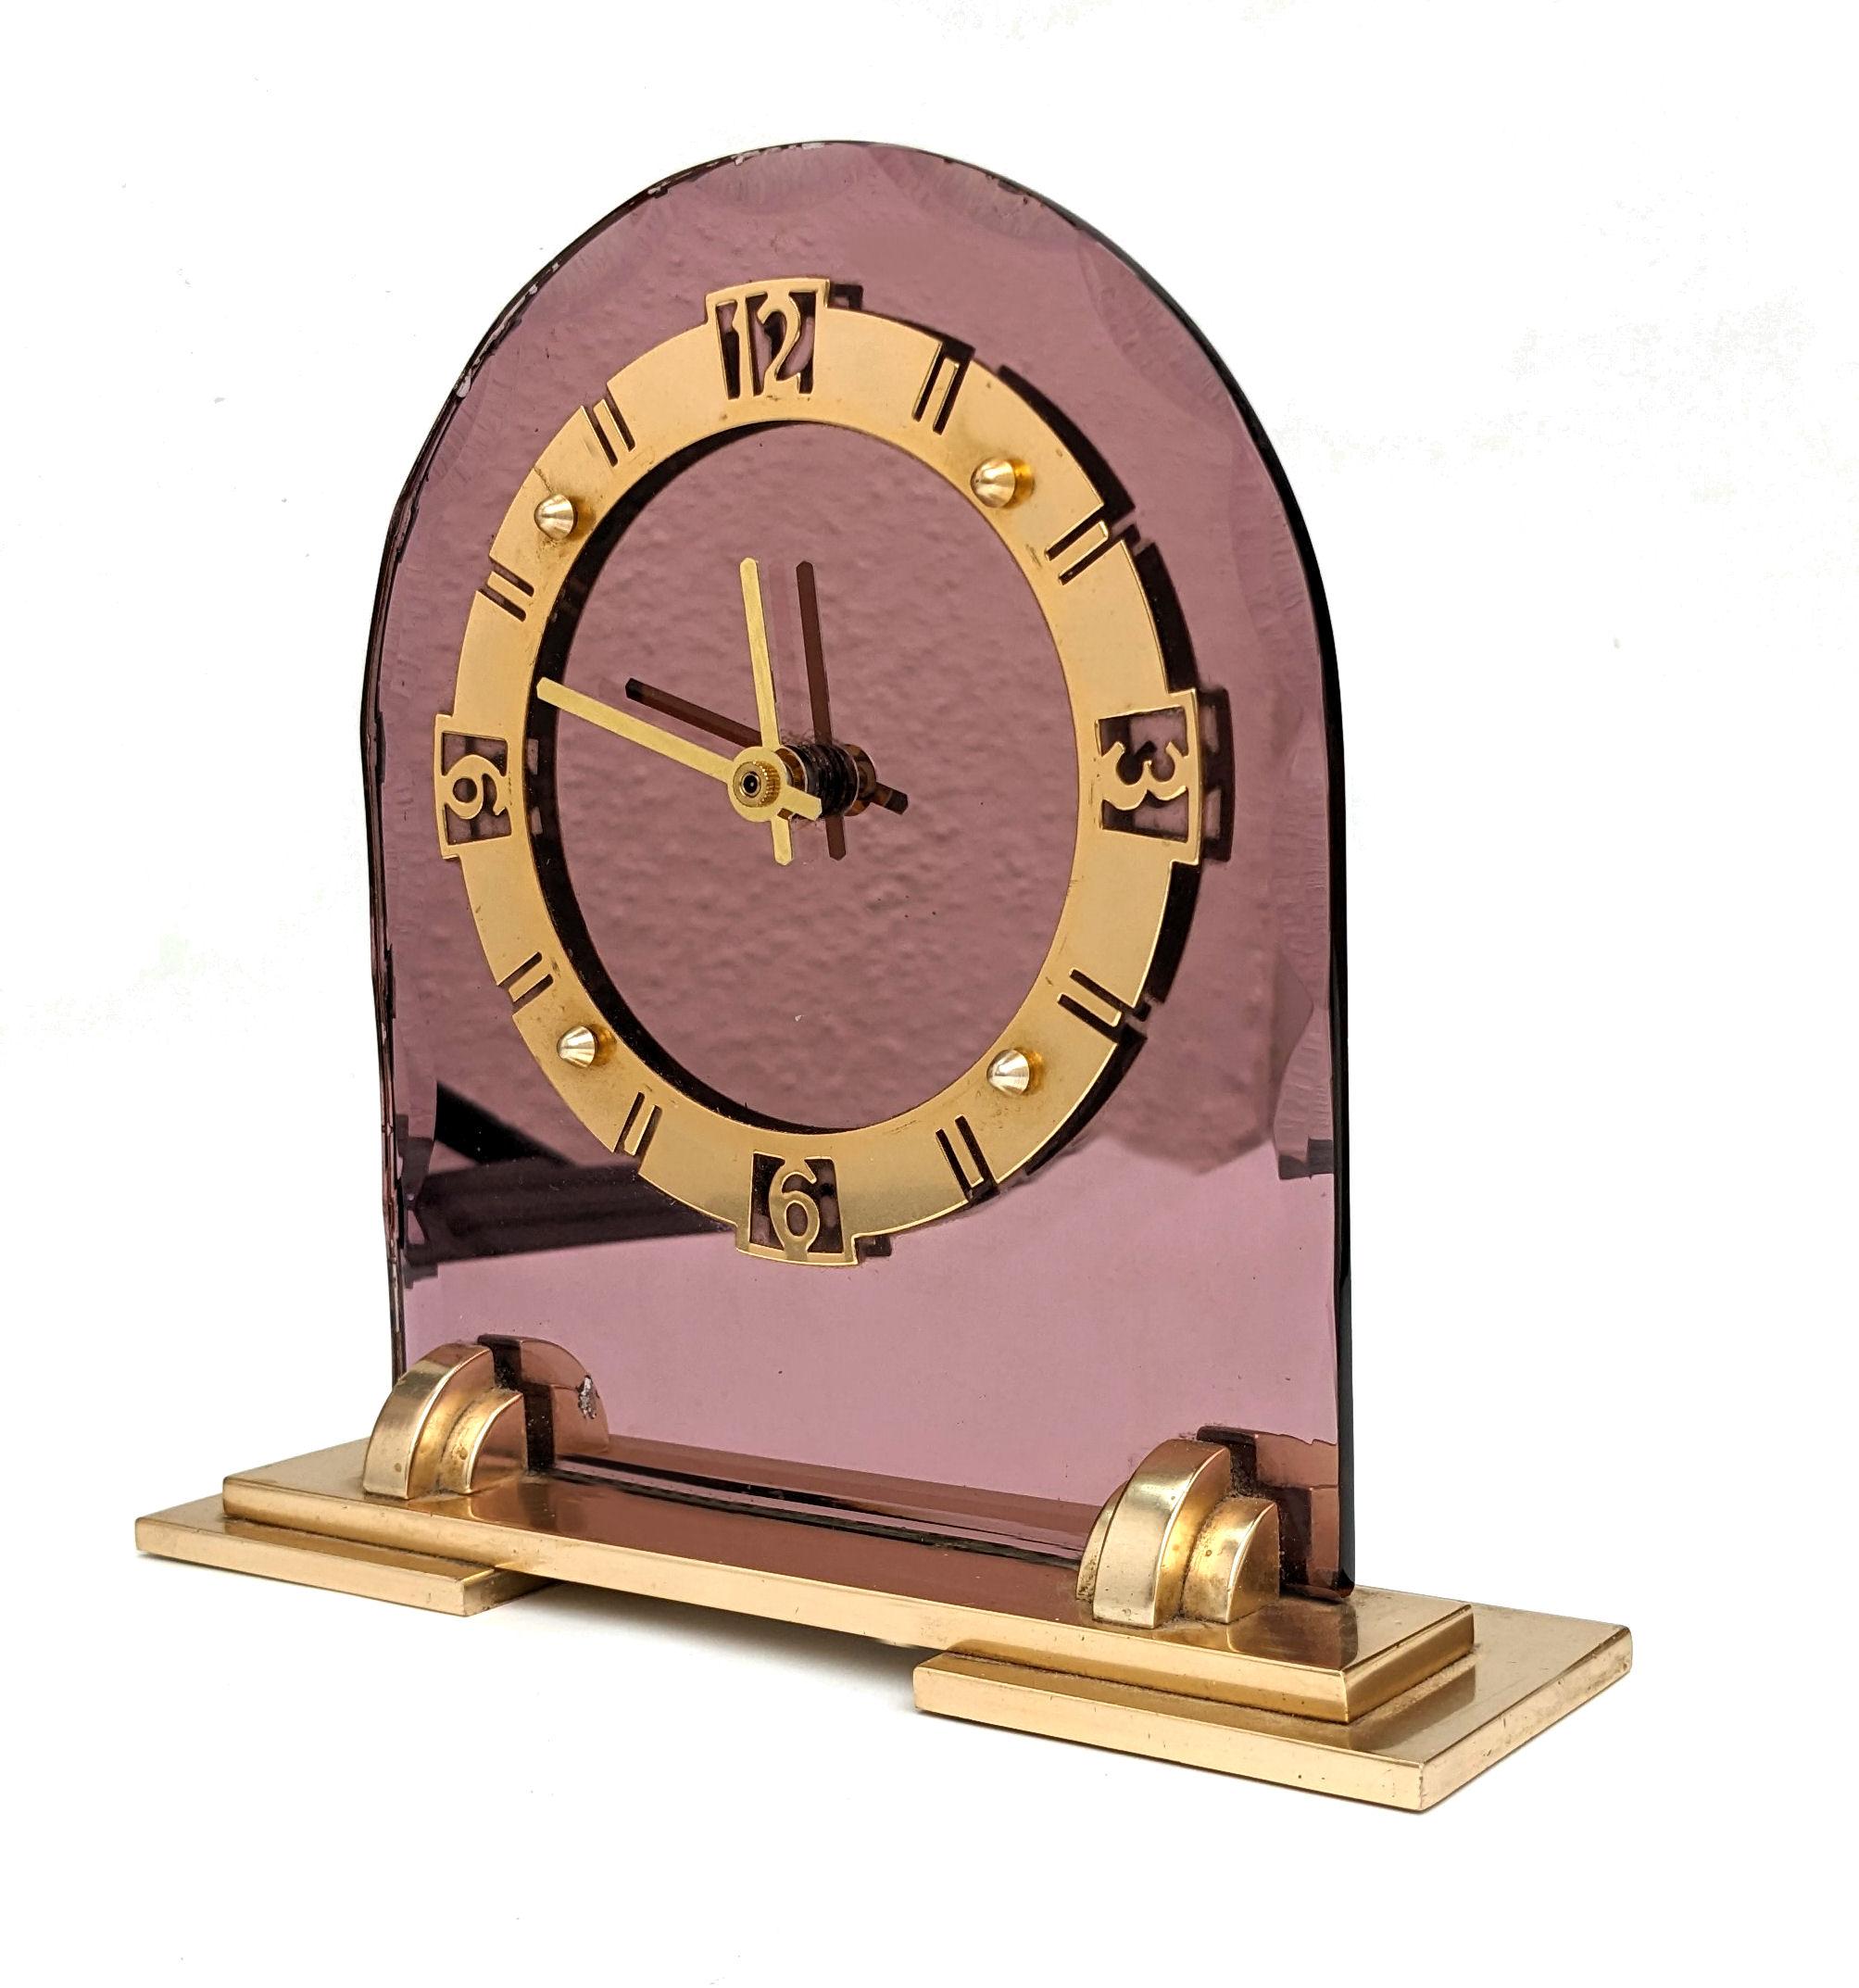 Nous vous proposons cette horloge Art Déco avec miroir en verre rose. En très bon état pour son âge, cette horloge miroir de style Art Déco des années 1930 est tout à fait authentique et provient d'Angleterre. Making Works par Smith's English Clocks